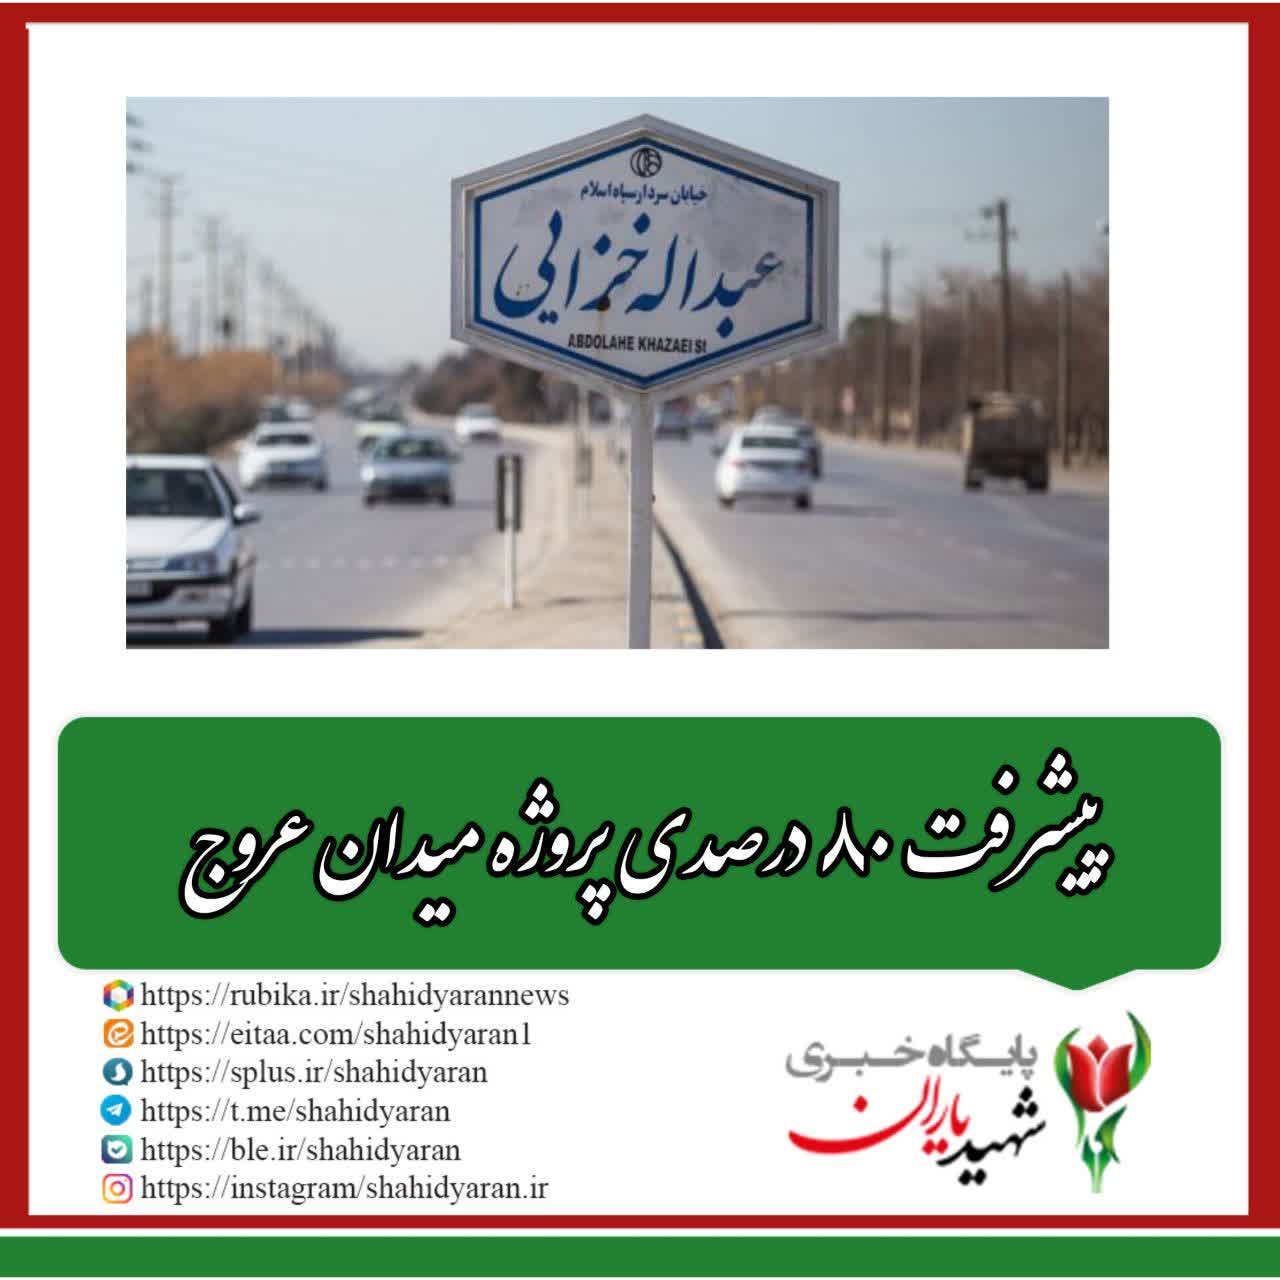 مدیر روابط عمومی منطقه ۱۰ شهرداری اصفهان خبر داد: